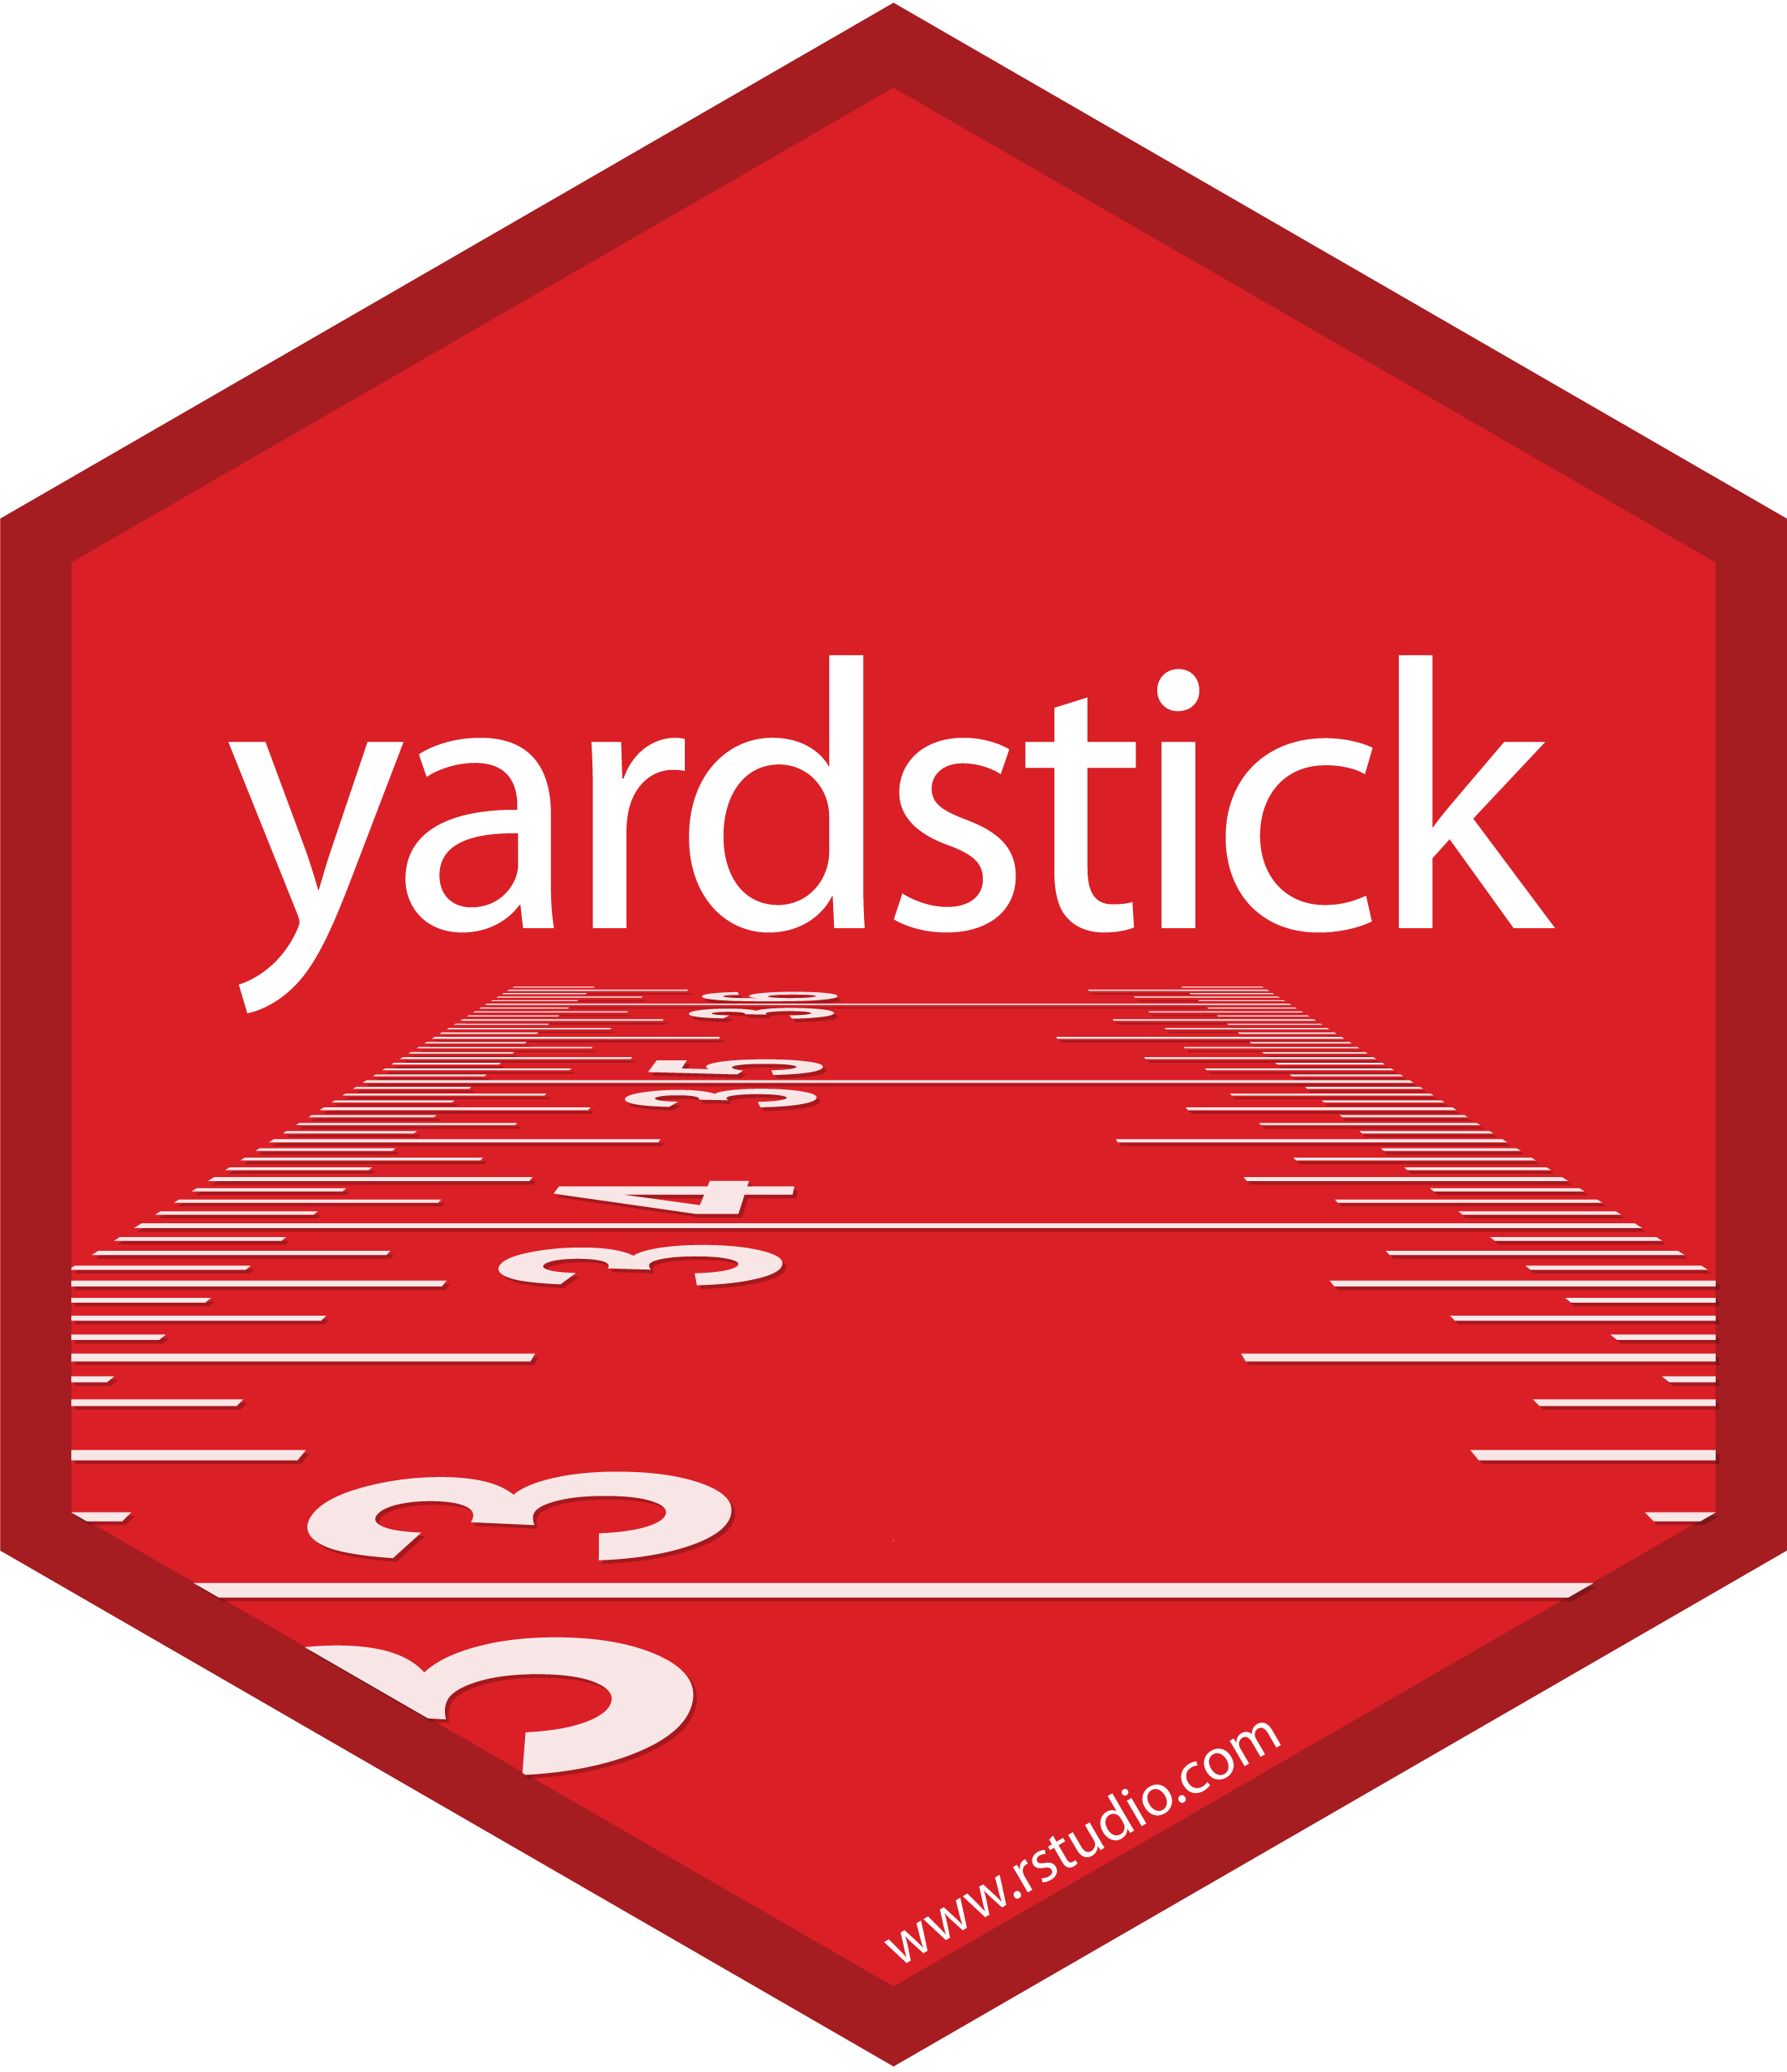 yardstick hex sticker